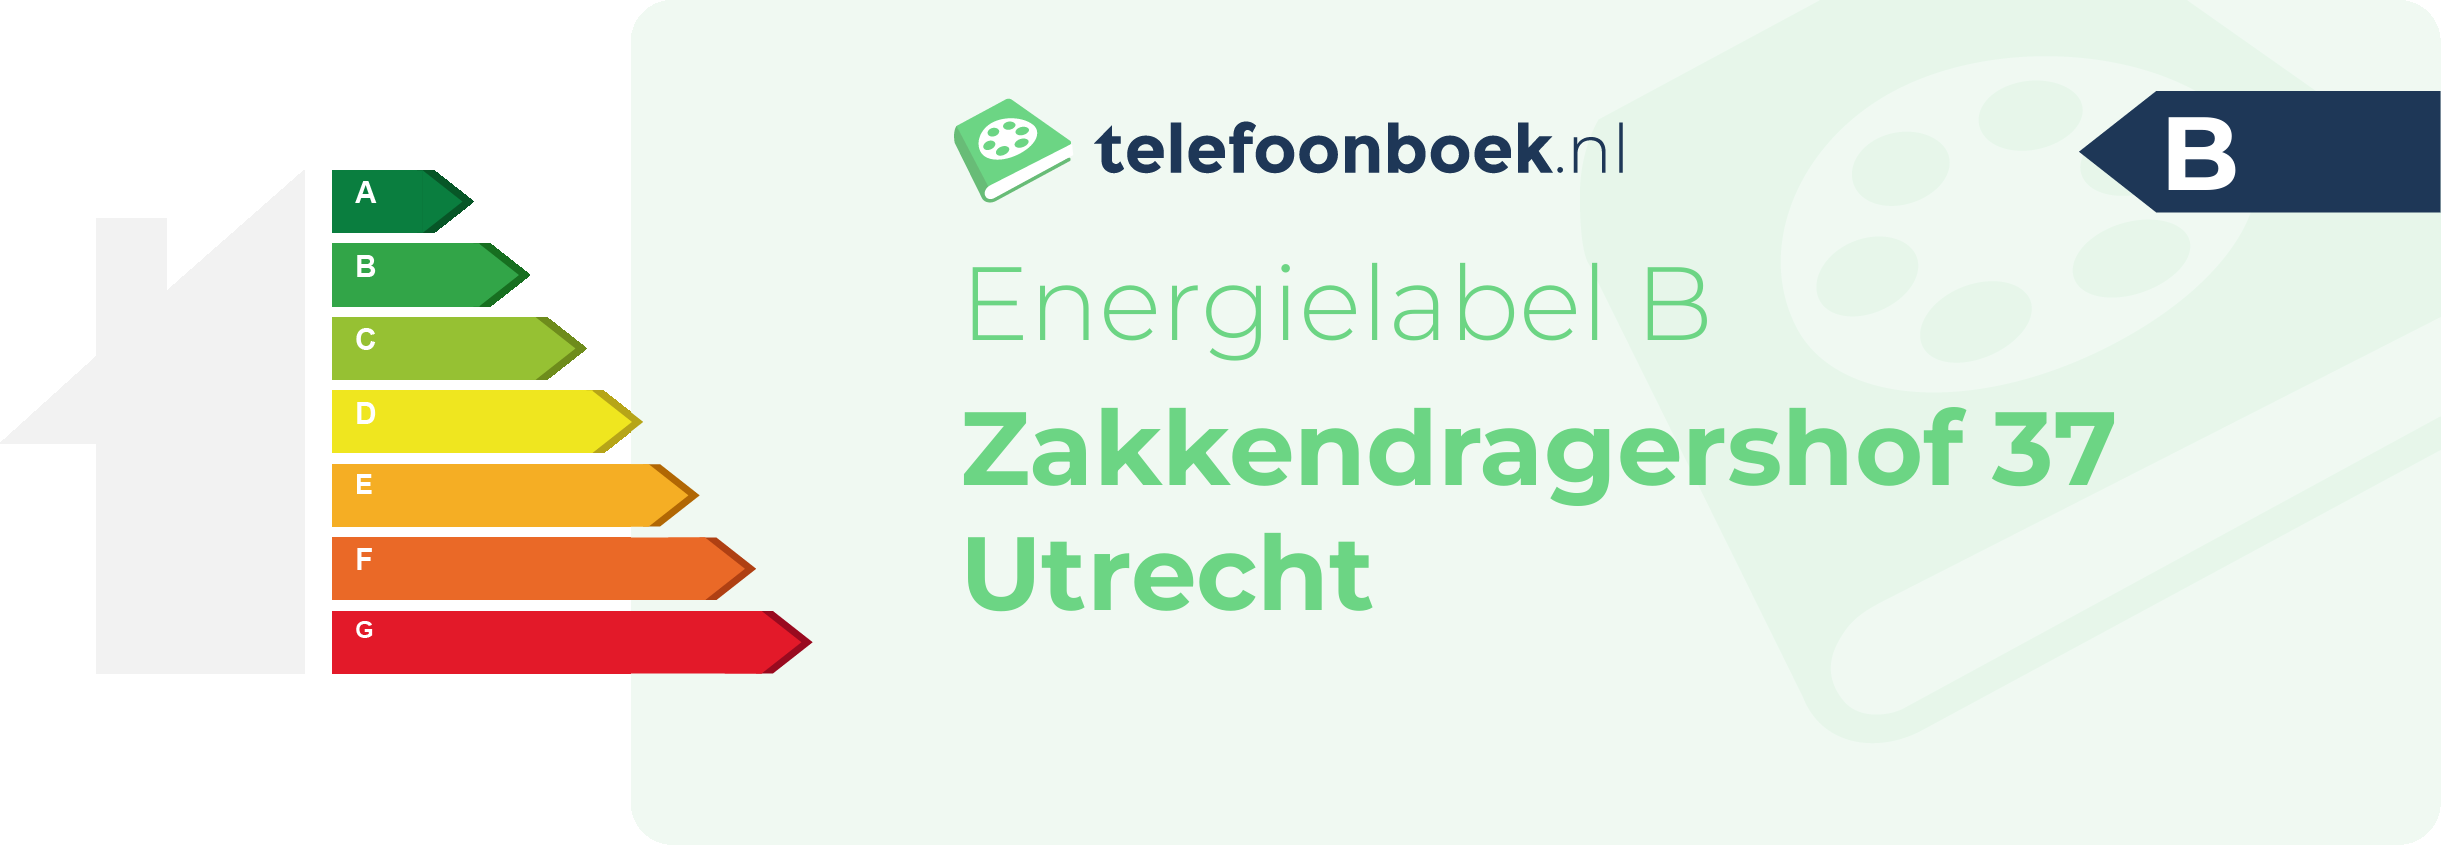 Energielabel Zakkendragershof 37 Utrecht